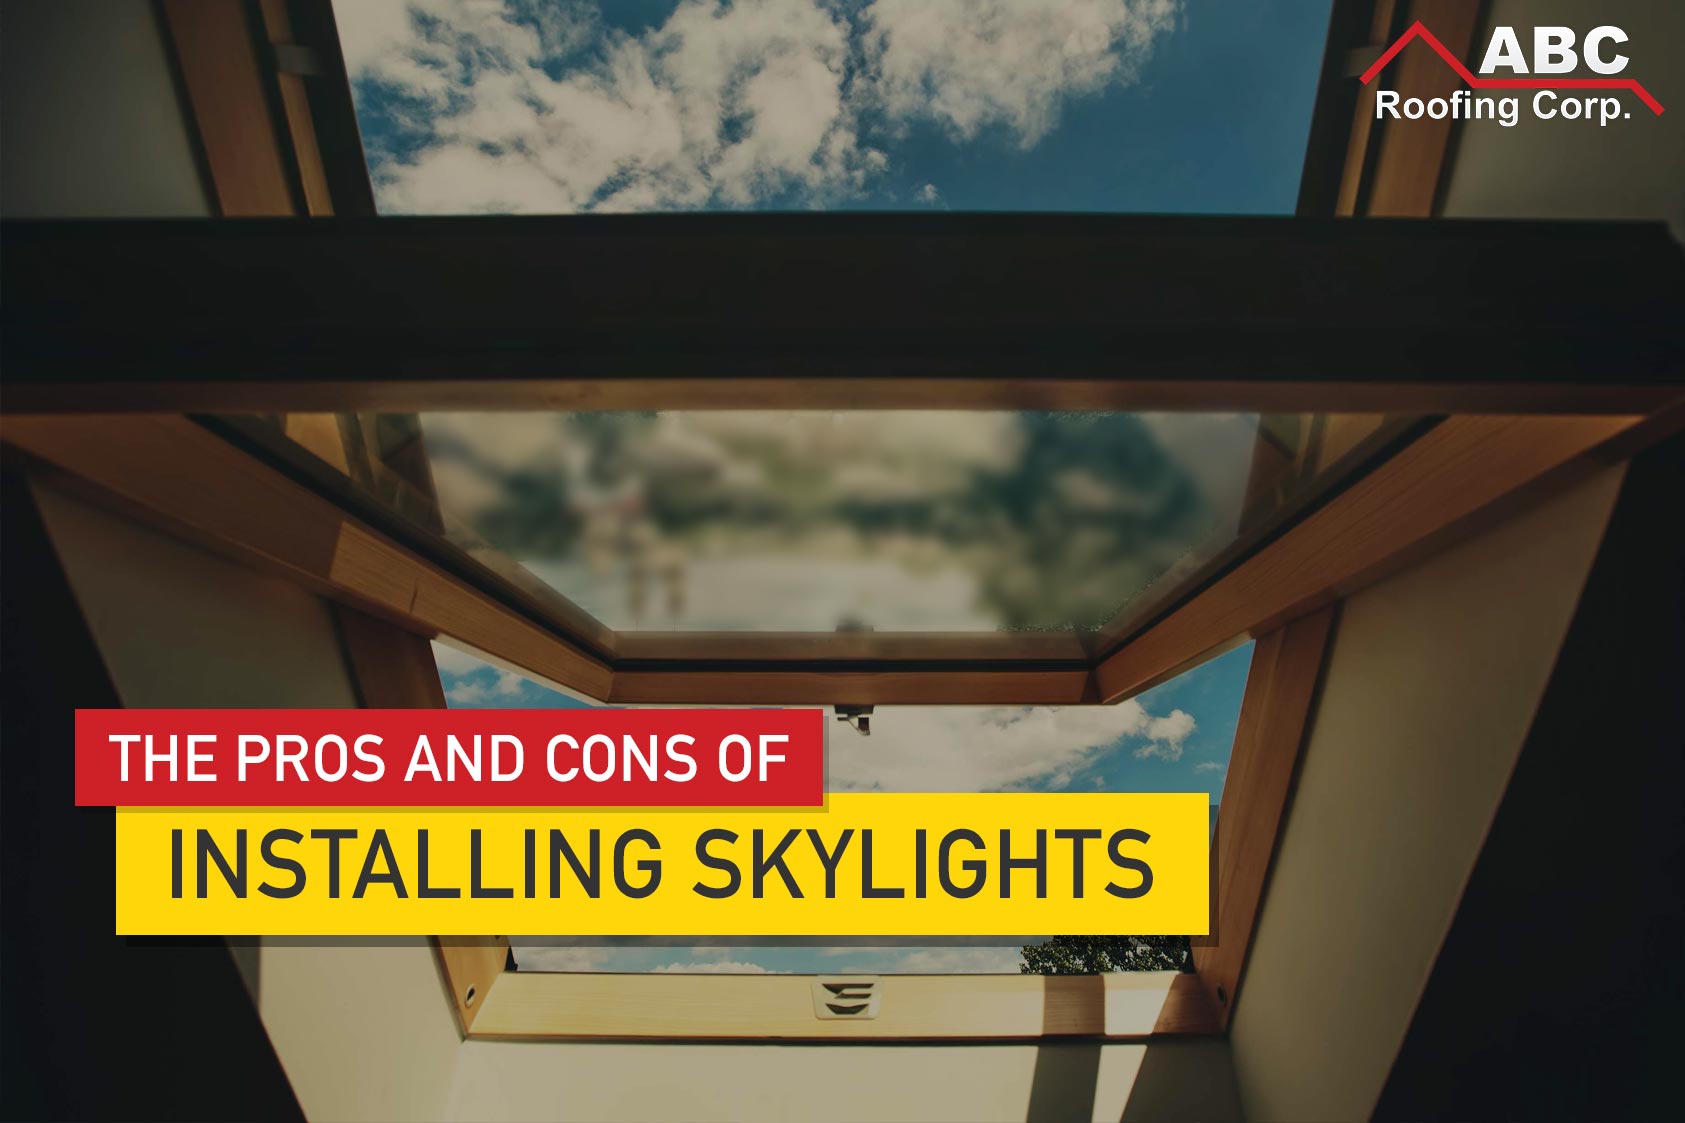 skylights